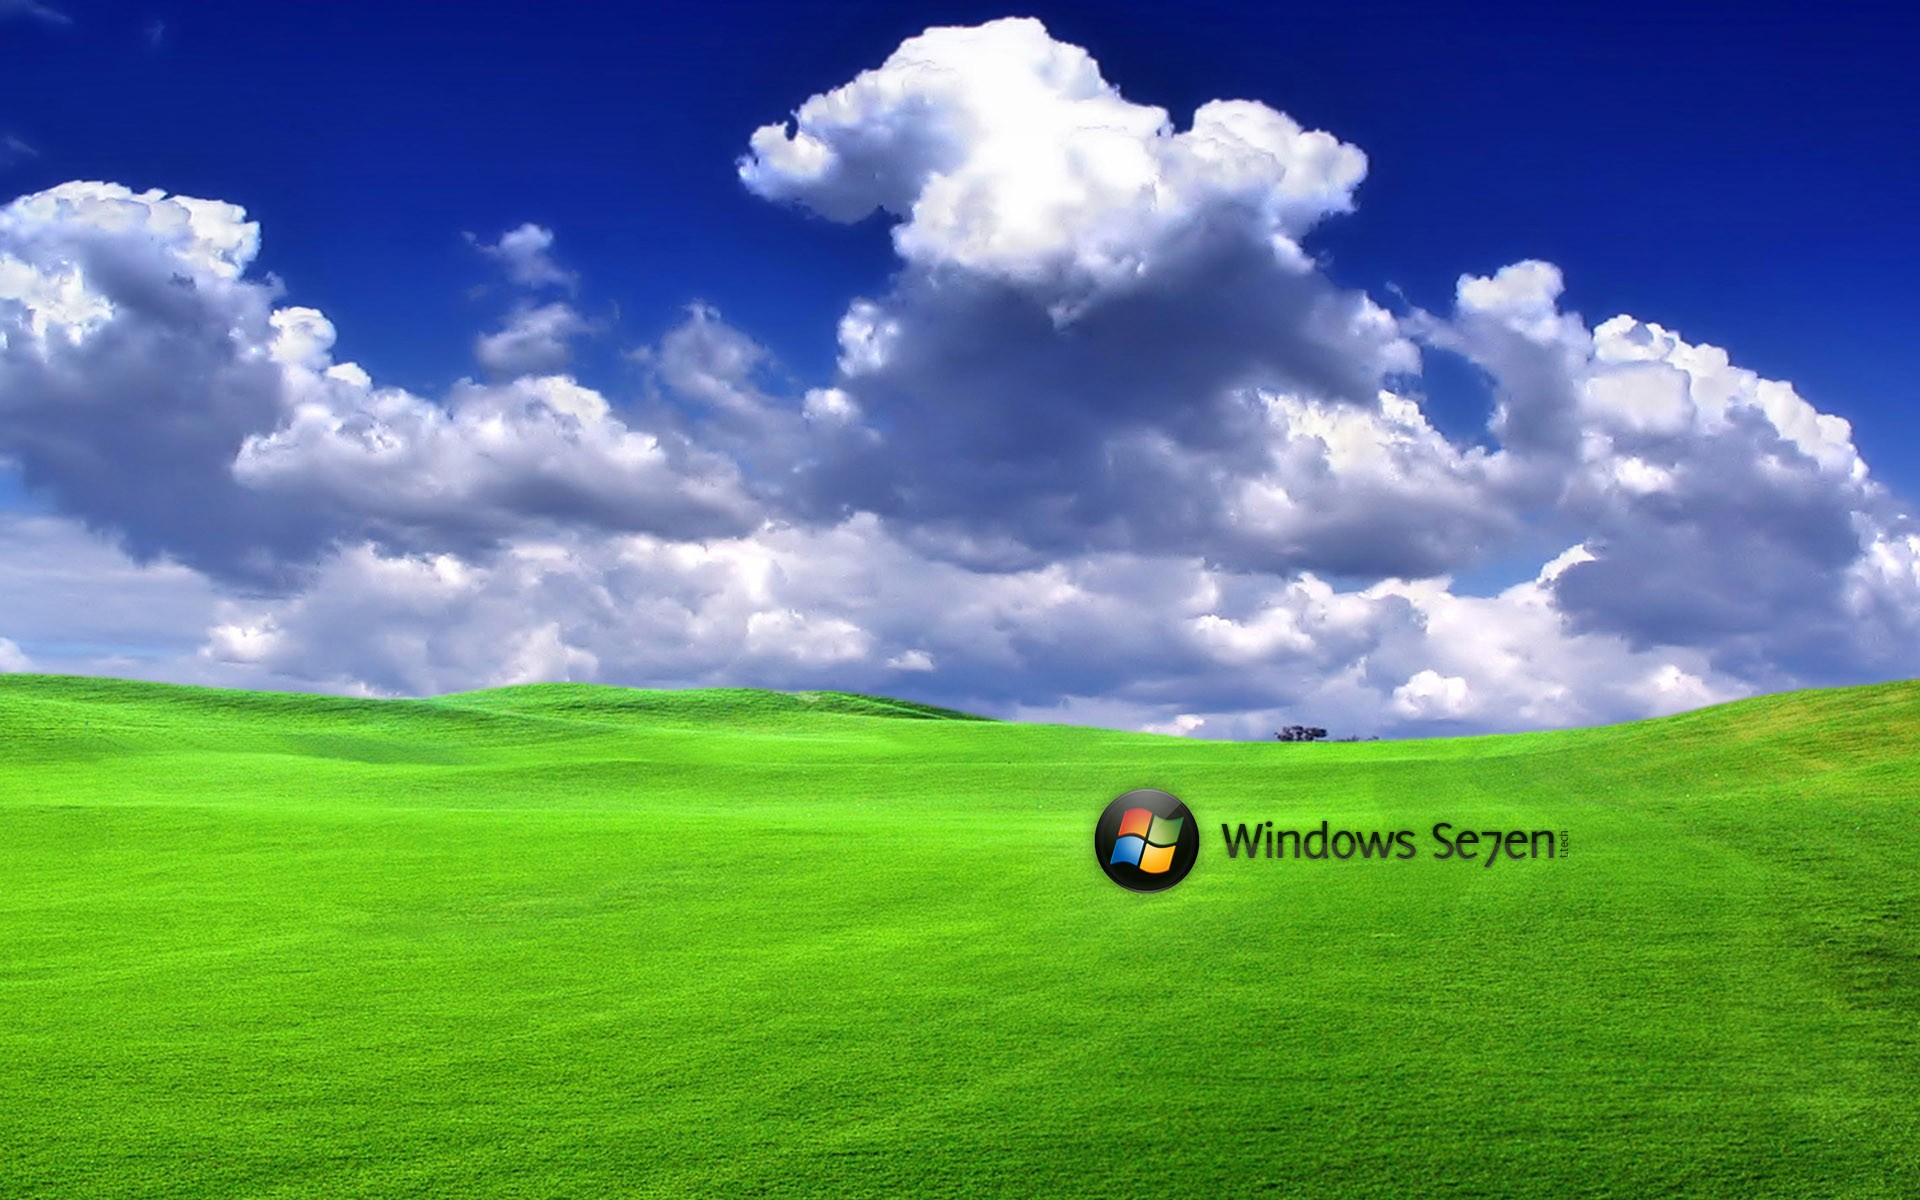 зеленый, облака, Windows 7 - обои на рабочий стол